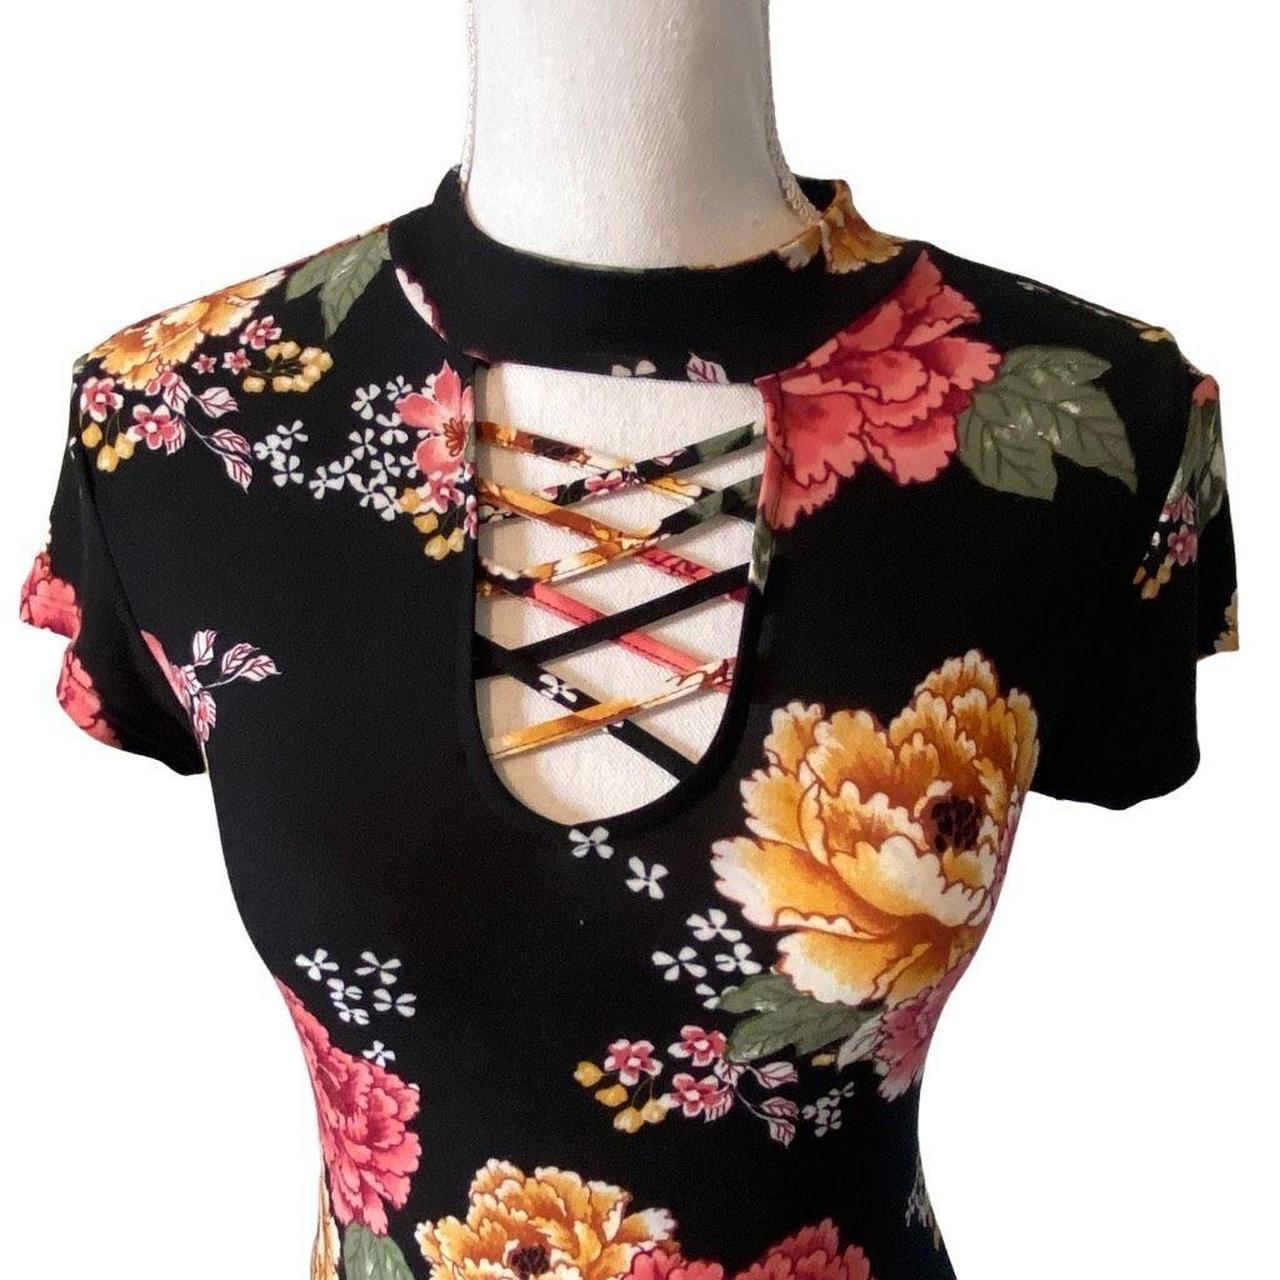 KTQUZCLF Women Body Suits, Vintage Floral Flowers Bodysuit, Long